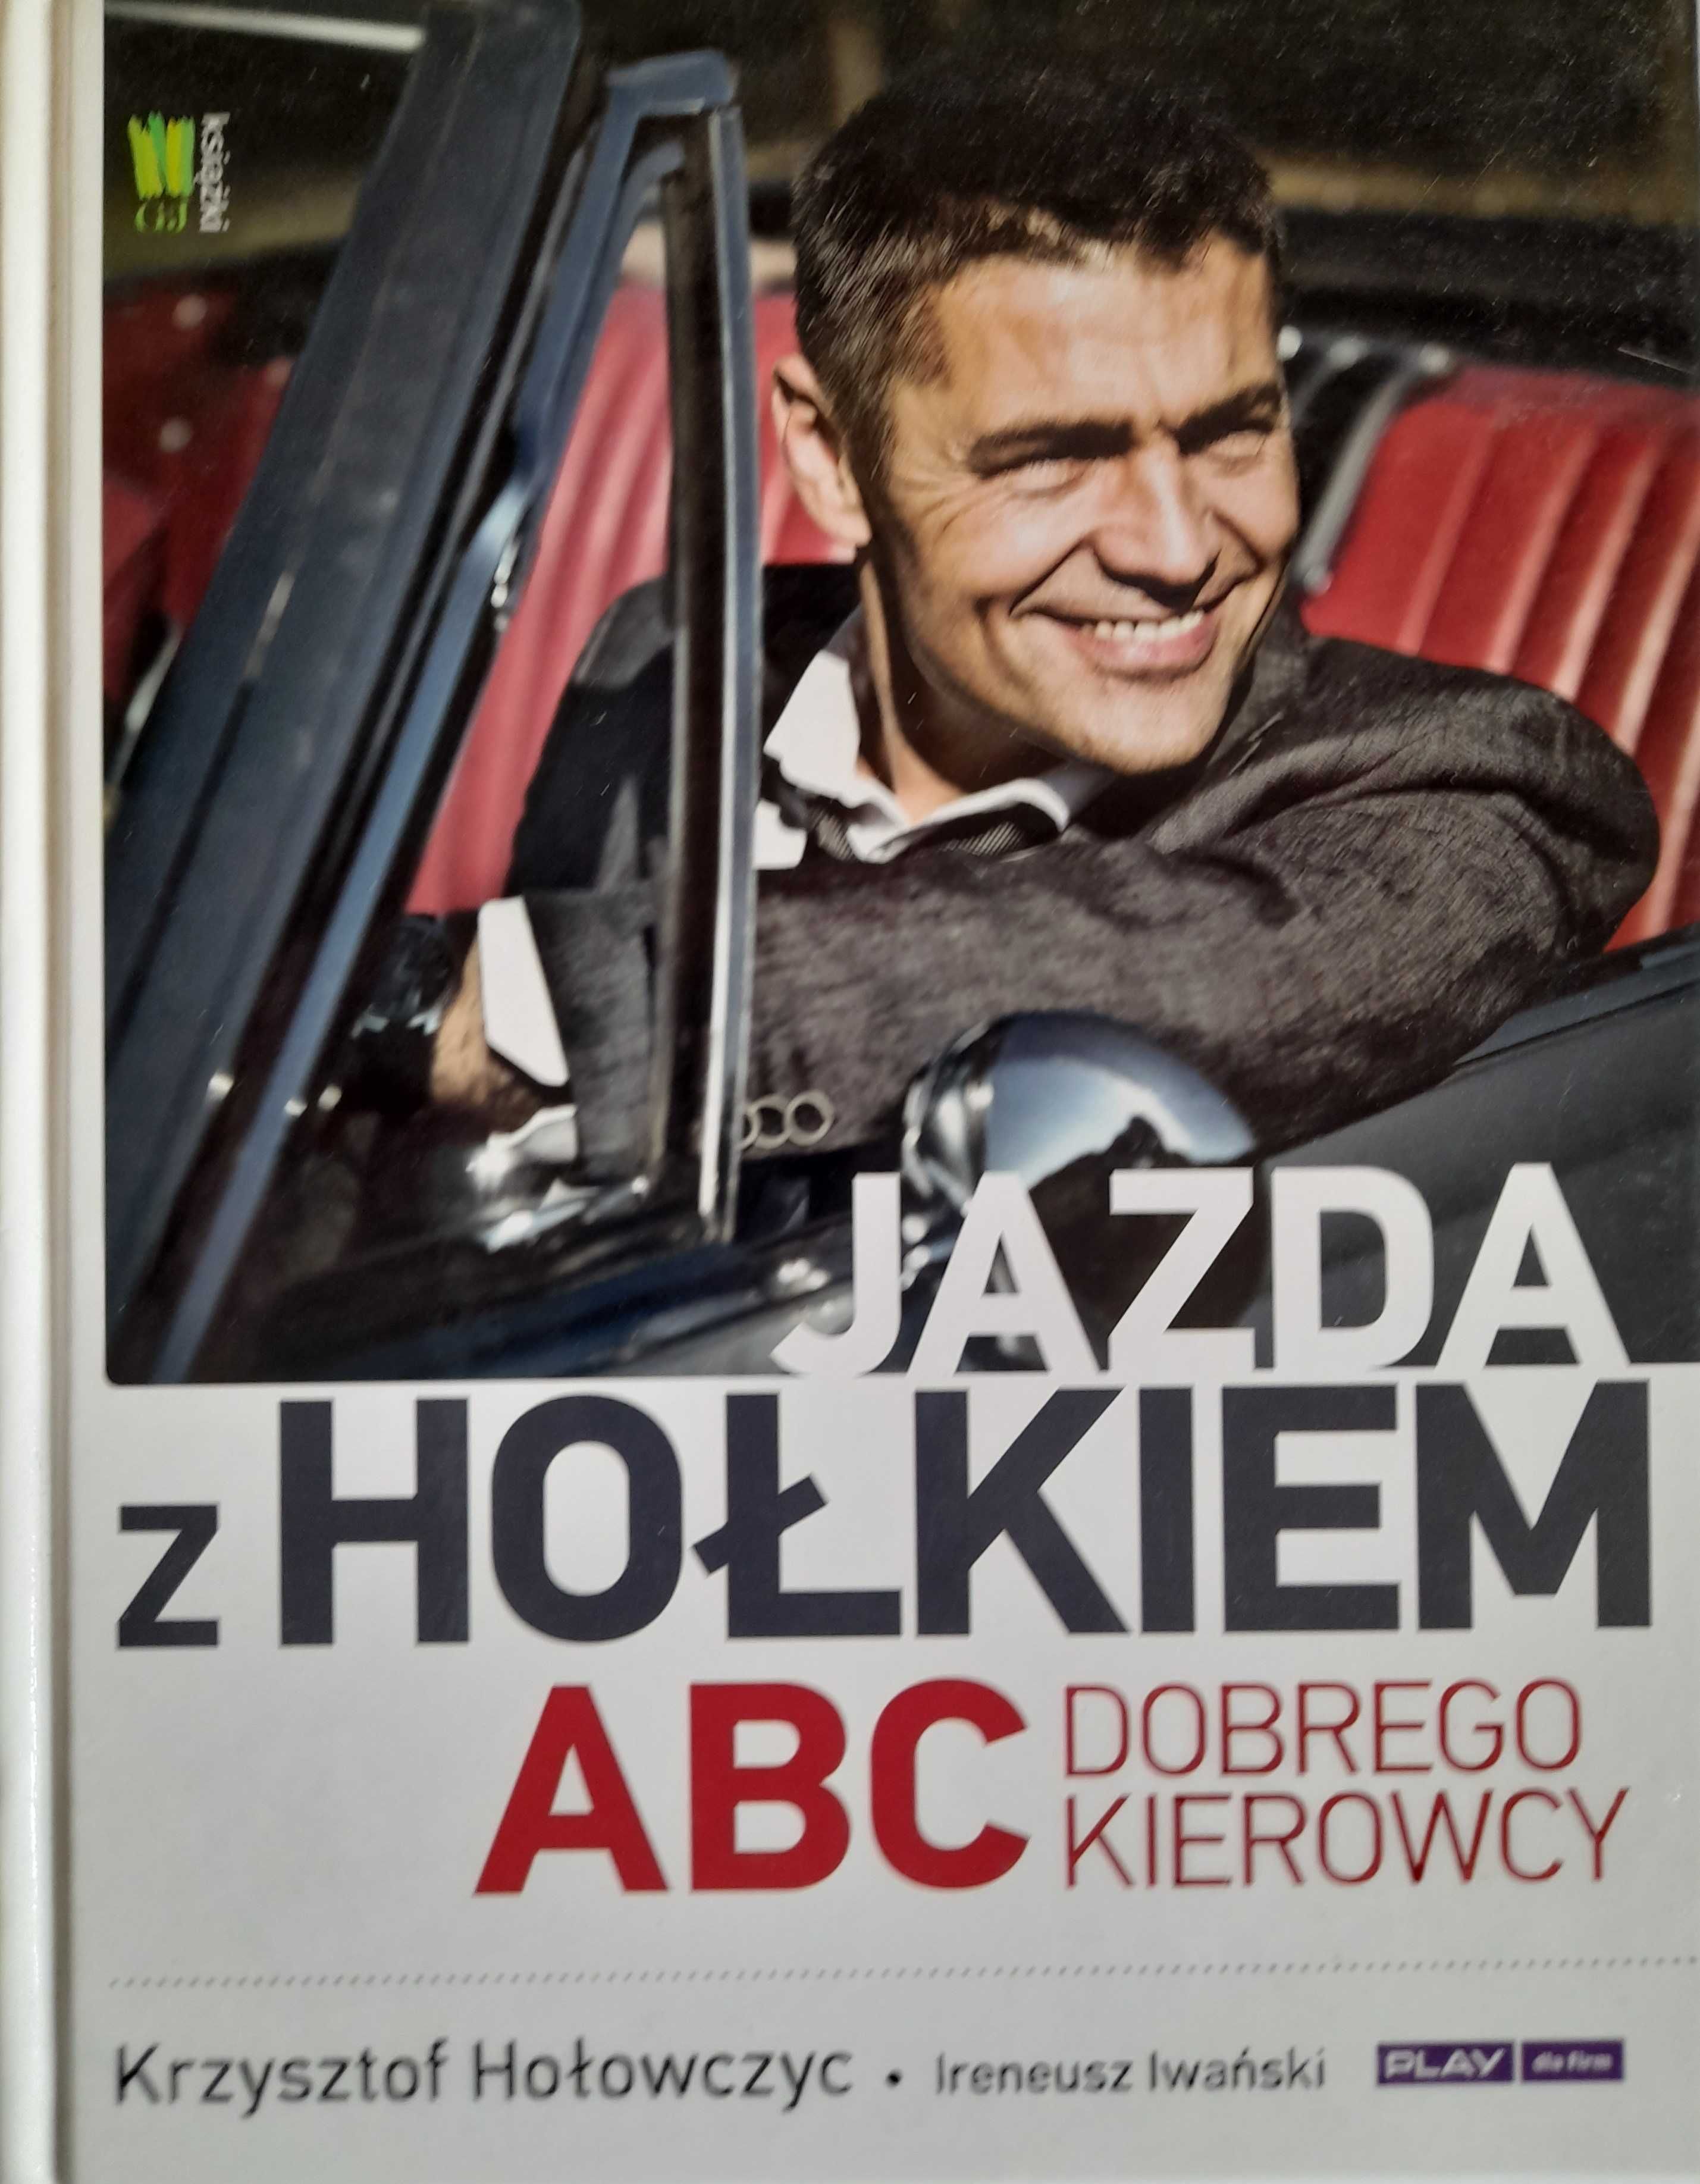 Jazda z Hołkiem. ABC kierowcy Krzysztof Hołowczyc